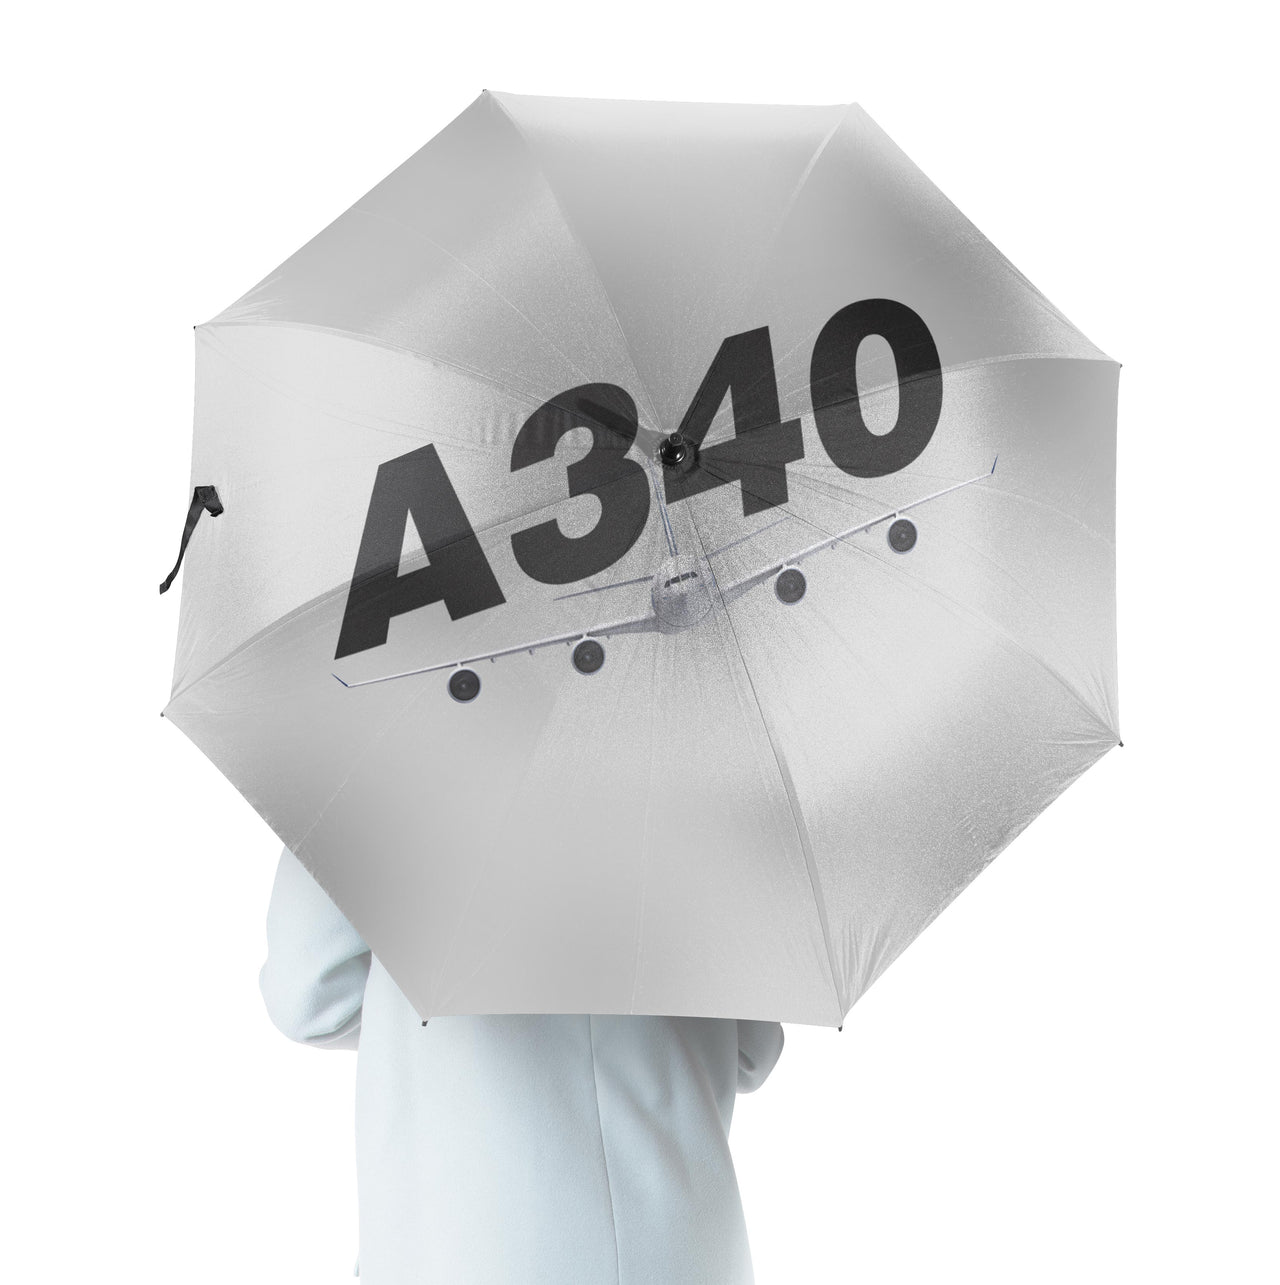 Super Airbus A340 Designed Umbrella